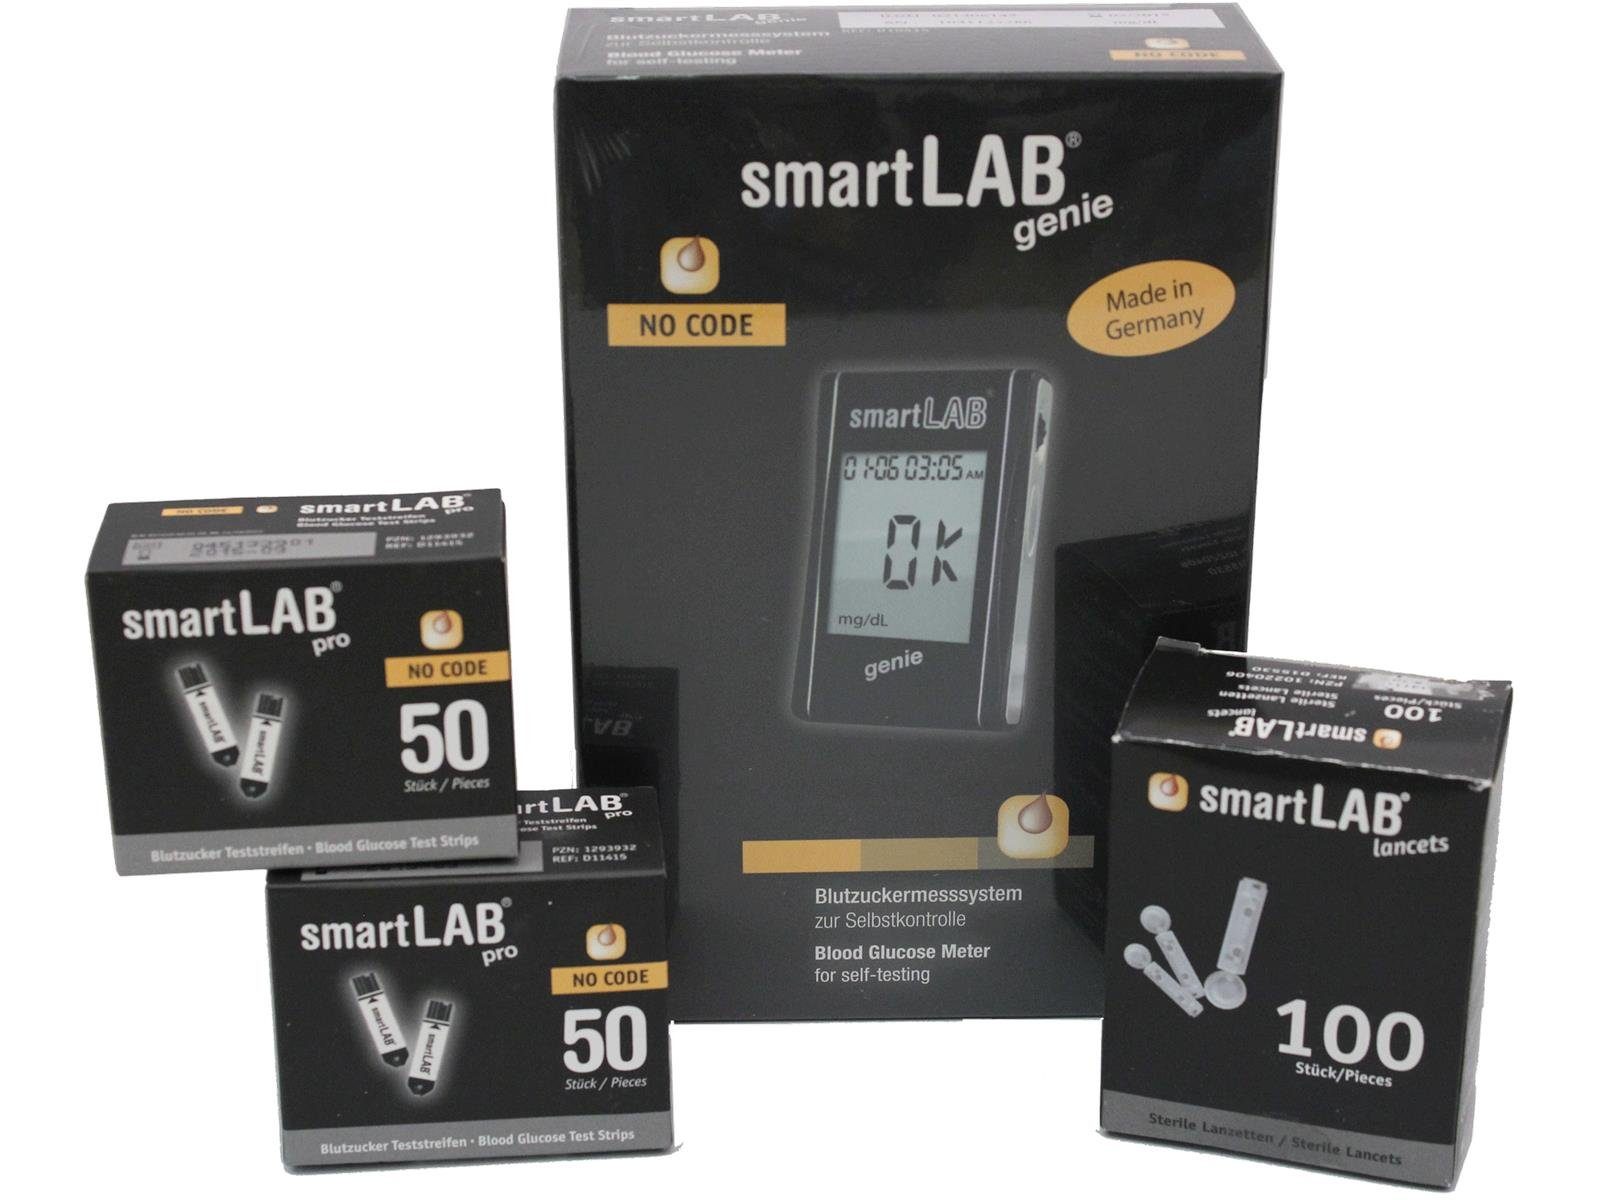 smartLAB Blutzuckermessgerät smartLAB genie Blutzuckermessgerät Bundel mit großem Display